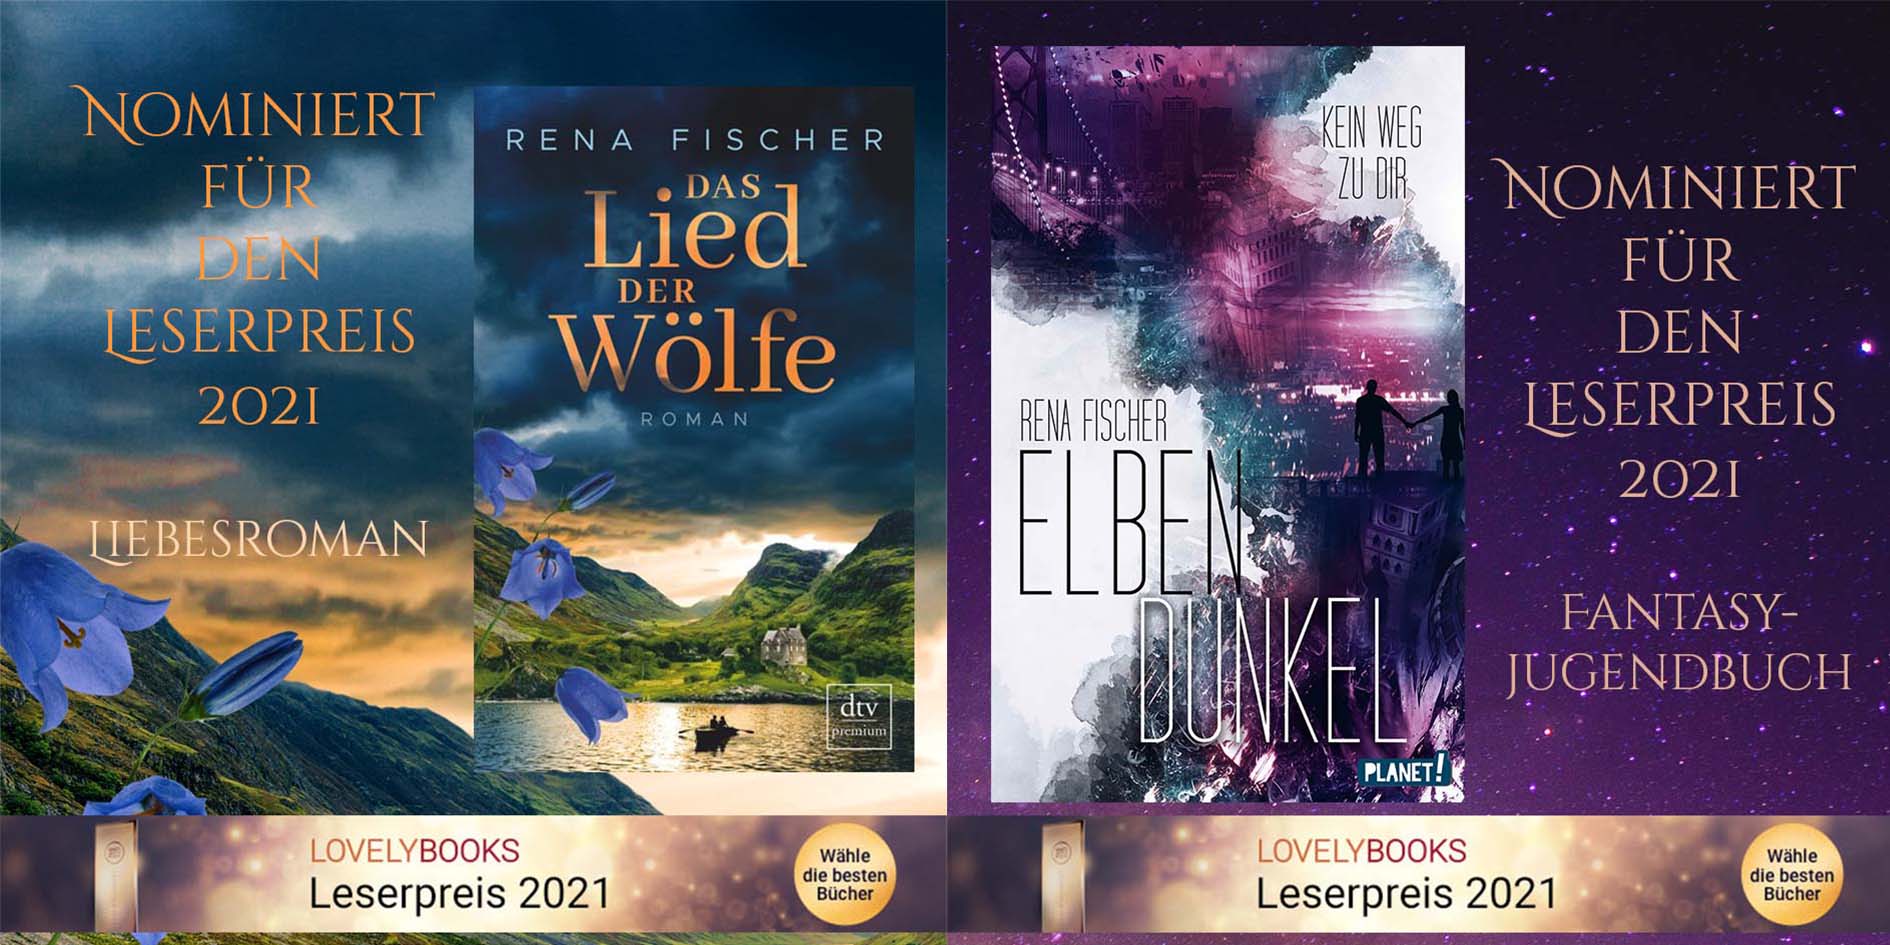 "Elbendunkel" und "Das Lied der Wölfe" für den Leserpreis nominiert